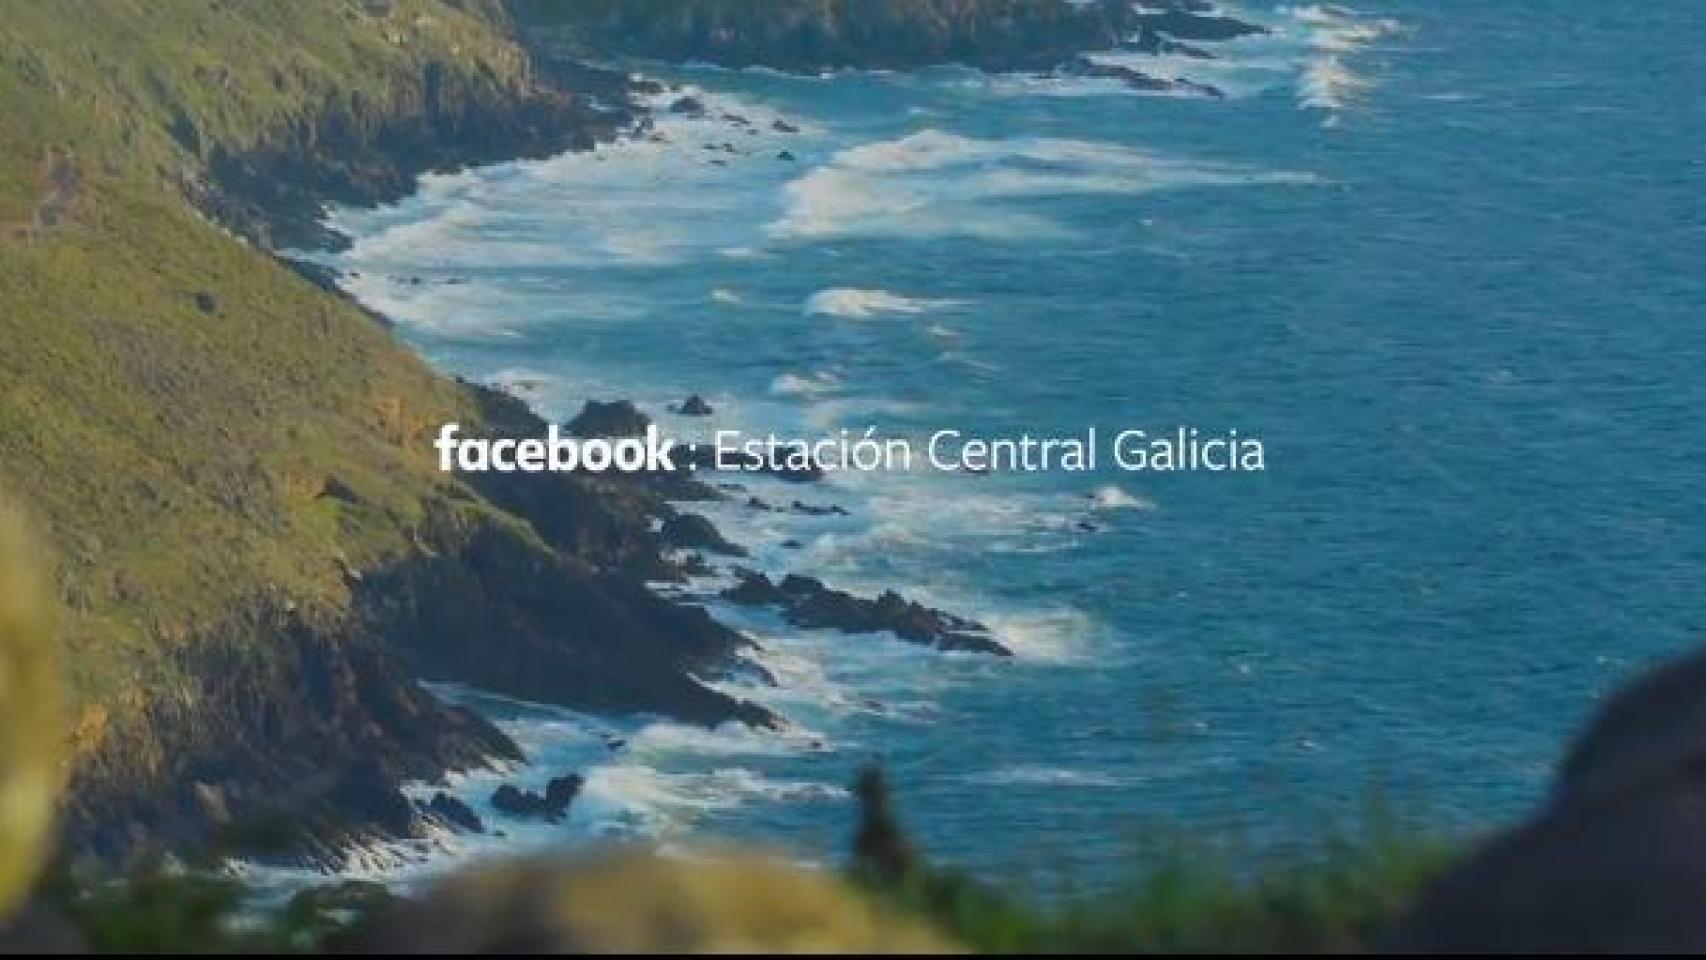 Facebook estrena un documental sobre Galicia en la red social